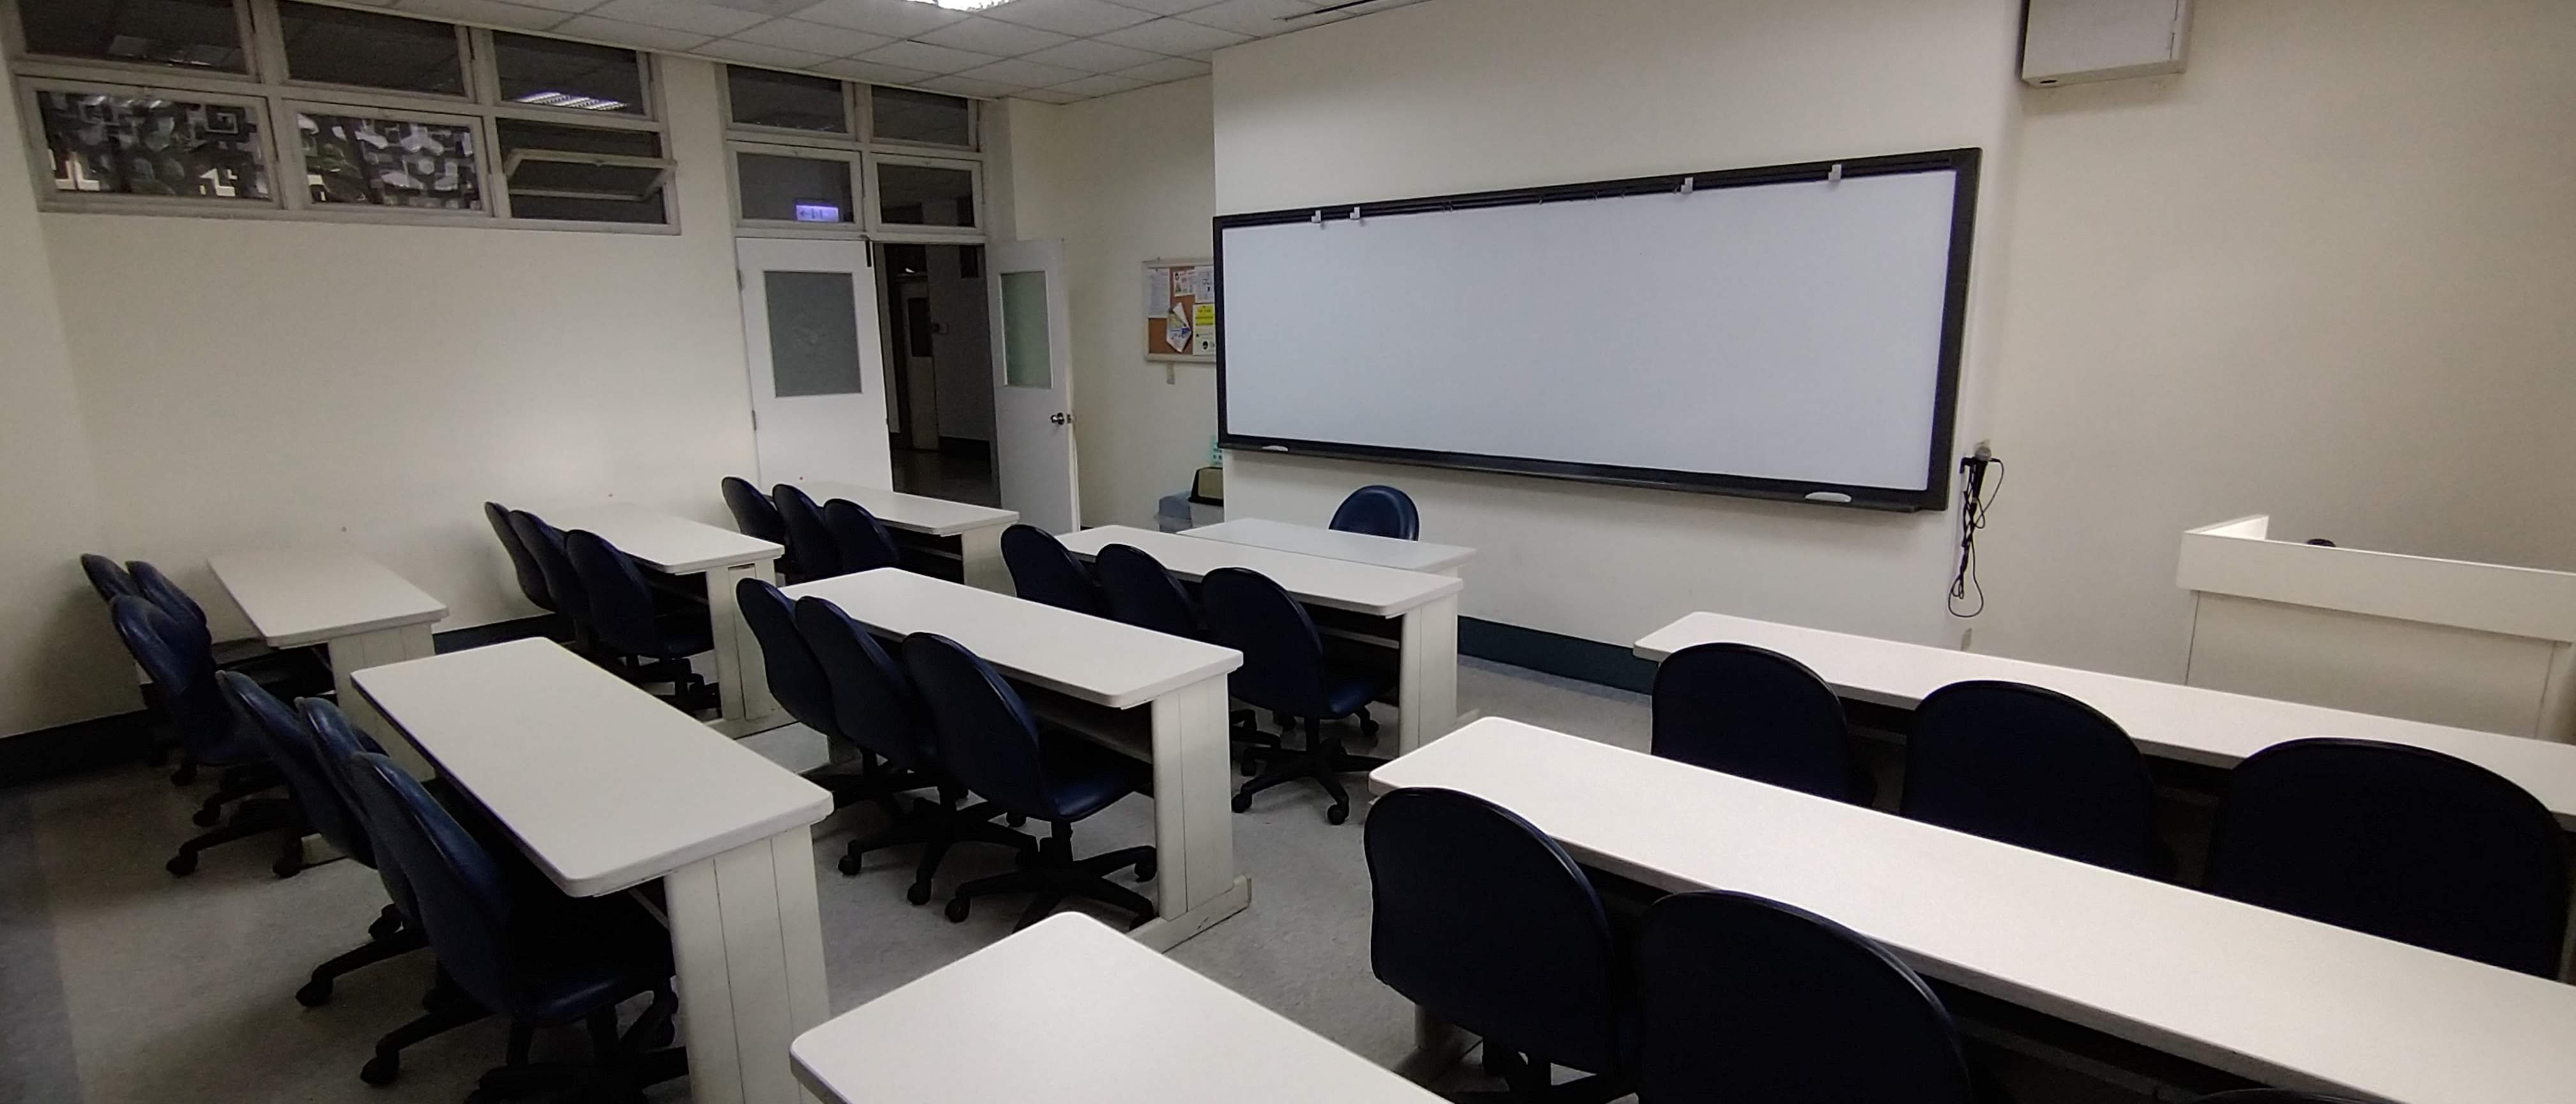 D210教室